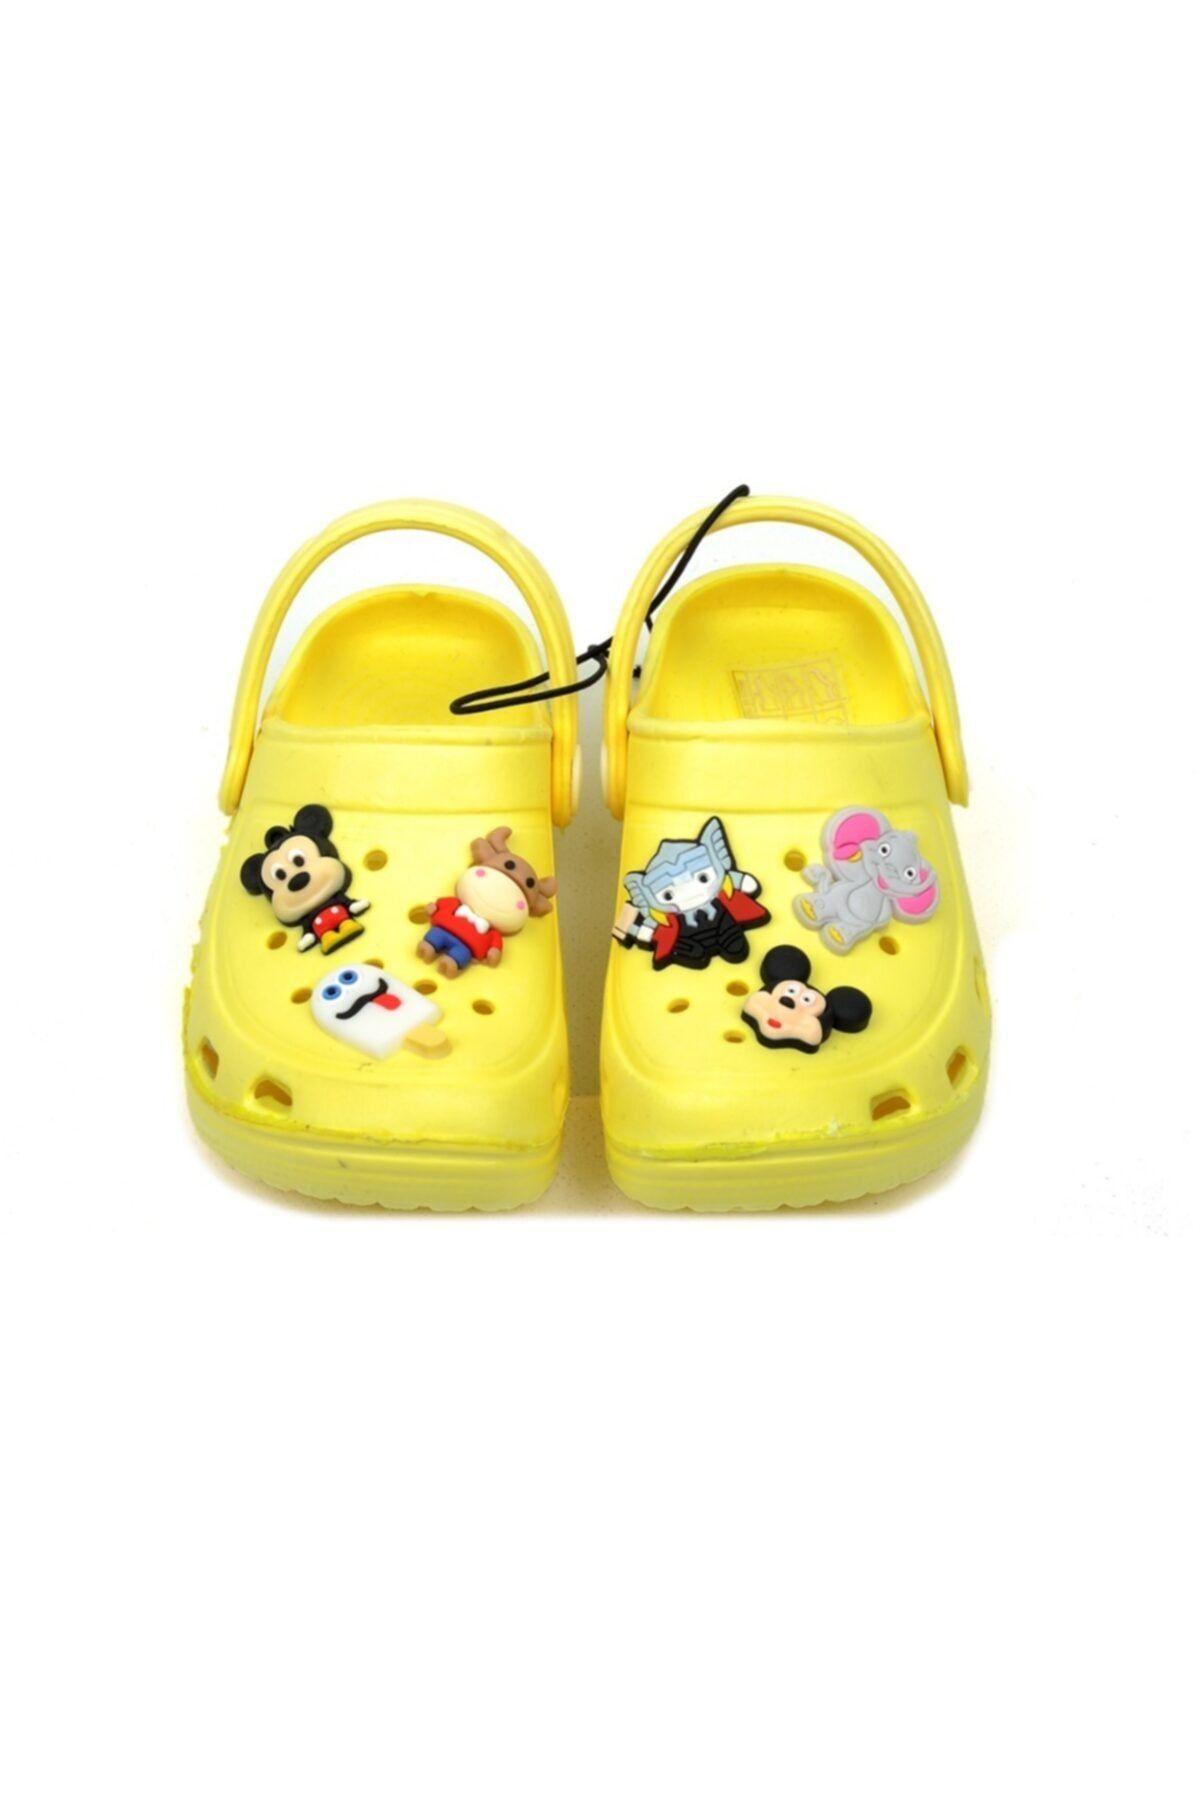 QUEEN AKSESUAR Erkek Çocuk Sarı Mickey Dondurma Süslü Sandalet Terlik